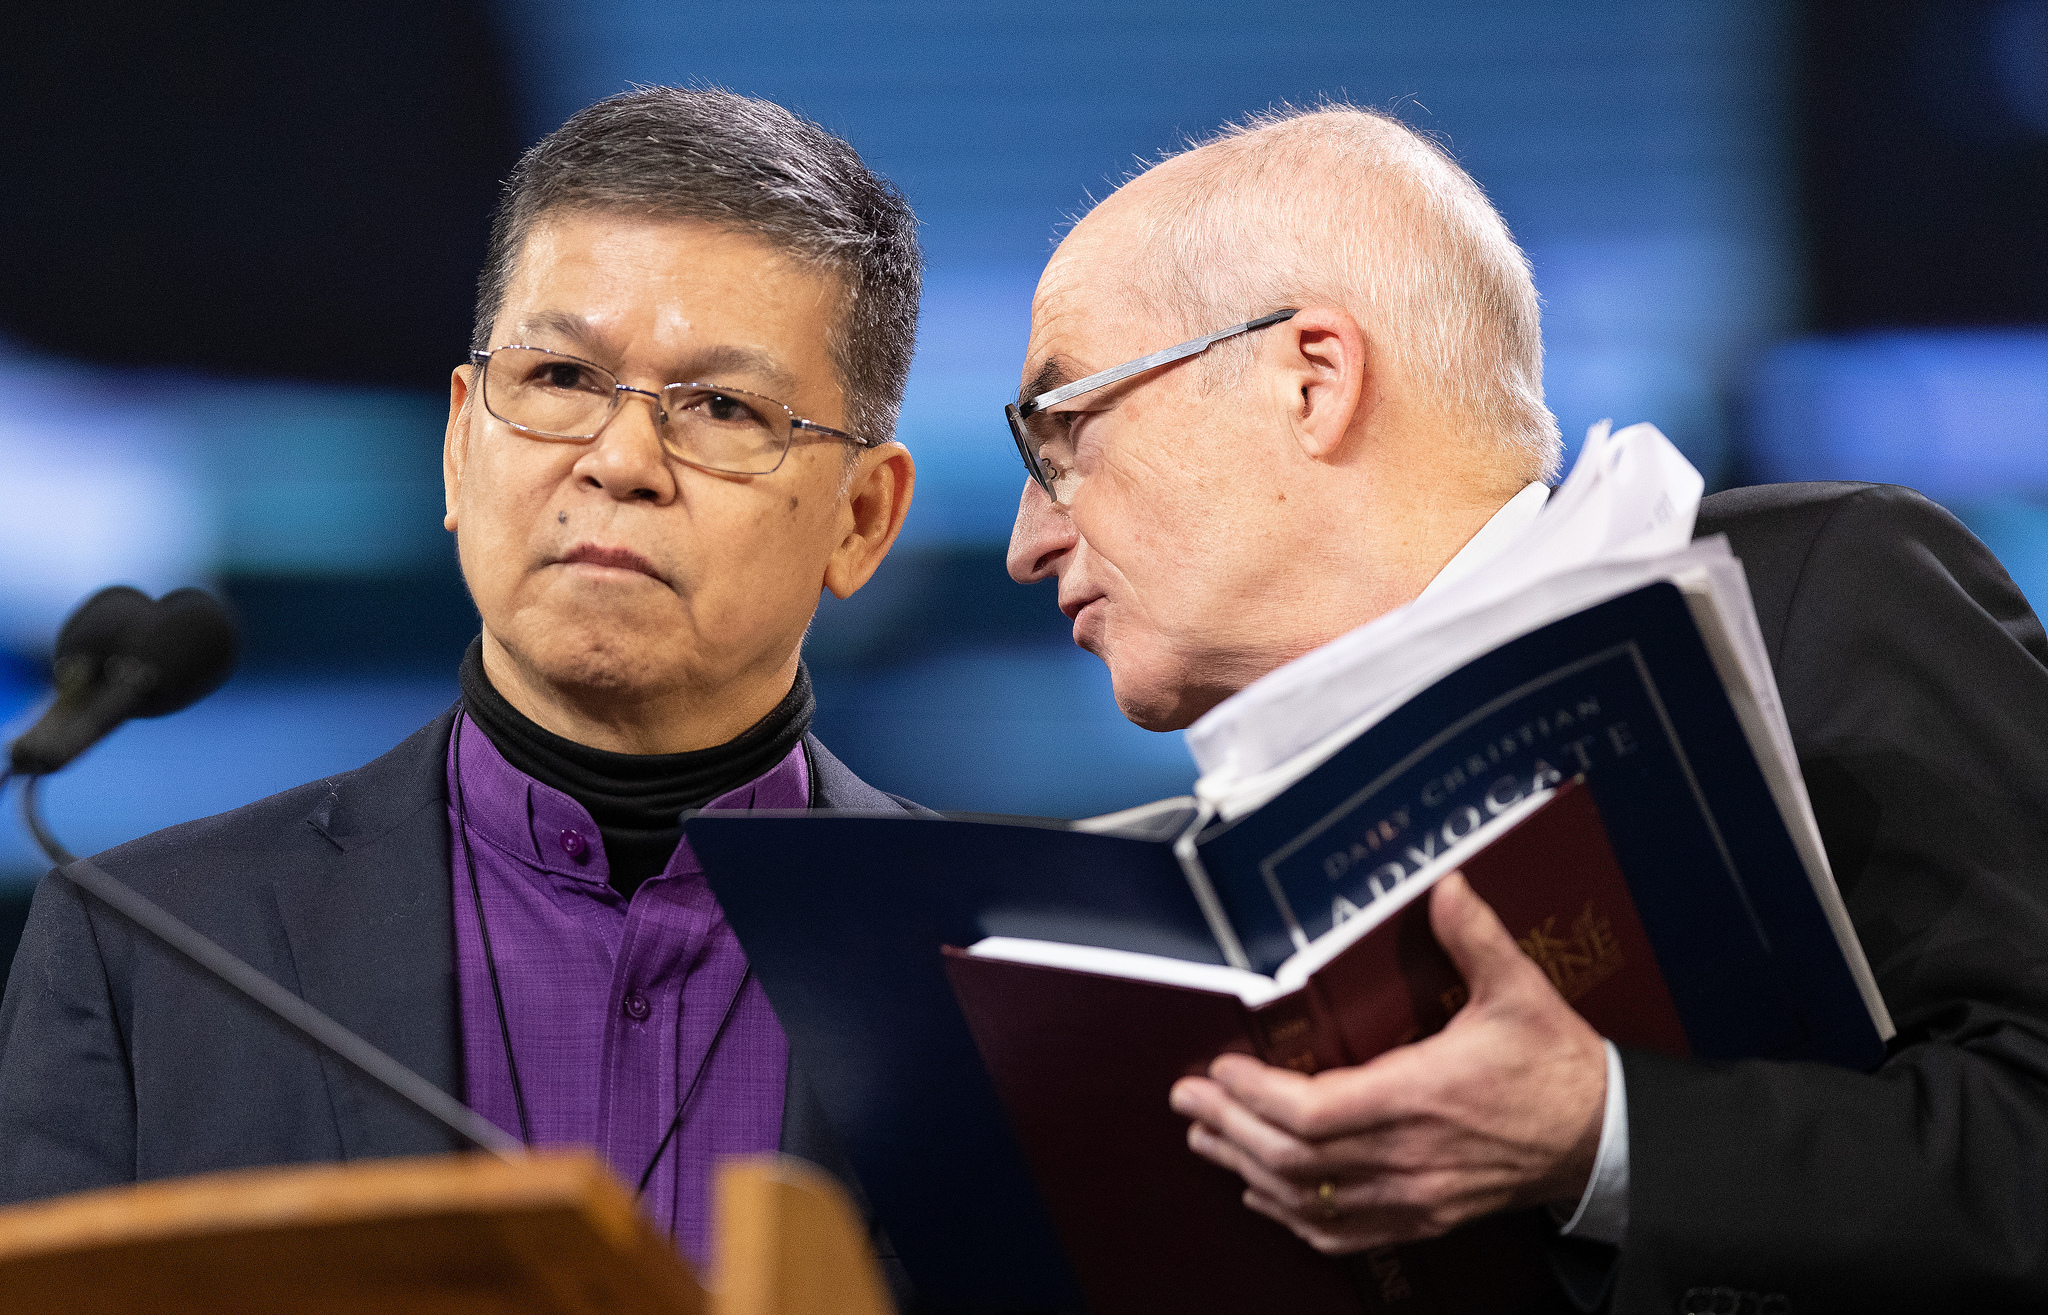 Os Bispos Ciriaco Q. Francisco (à esquerda) e Patrick Streiff conferenciam-se no pódio durante a Conferência Geral da Metodista Unida de 2019 em St. Louis. Ambos servem na Comissão Permanente para os Assuntos das Conferências Centrais. Foto de Mike DuBose, UMNS.